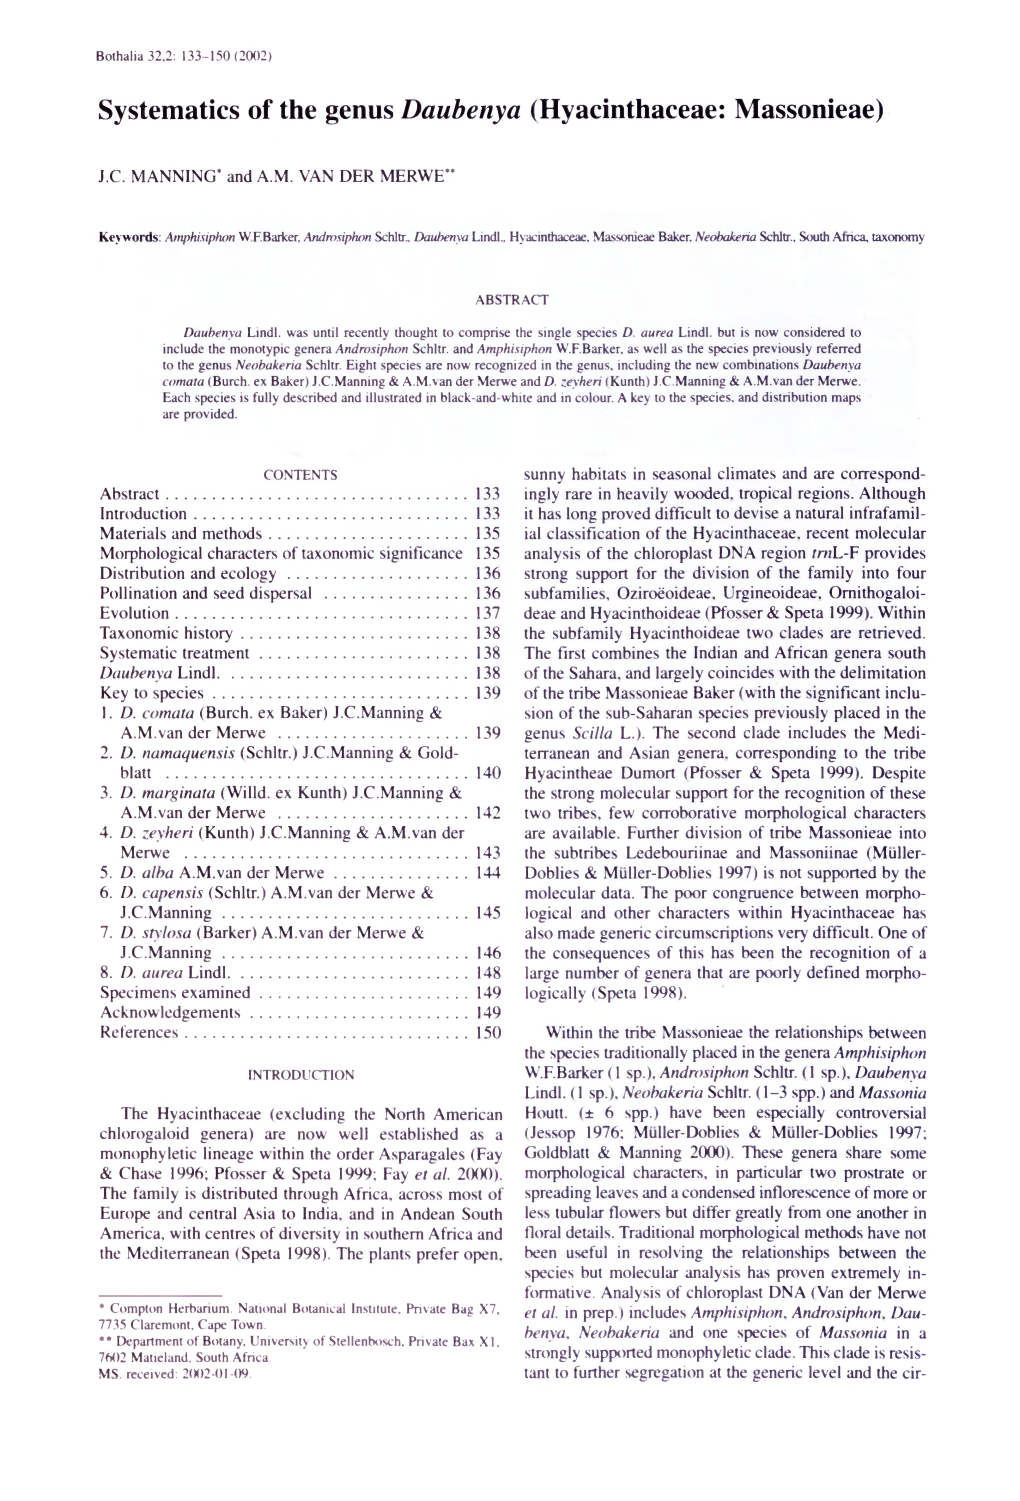 Systematics of the Genus Daubenya (Hyacinthaceae: Massonieae)